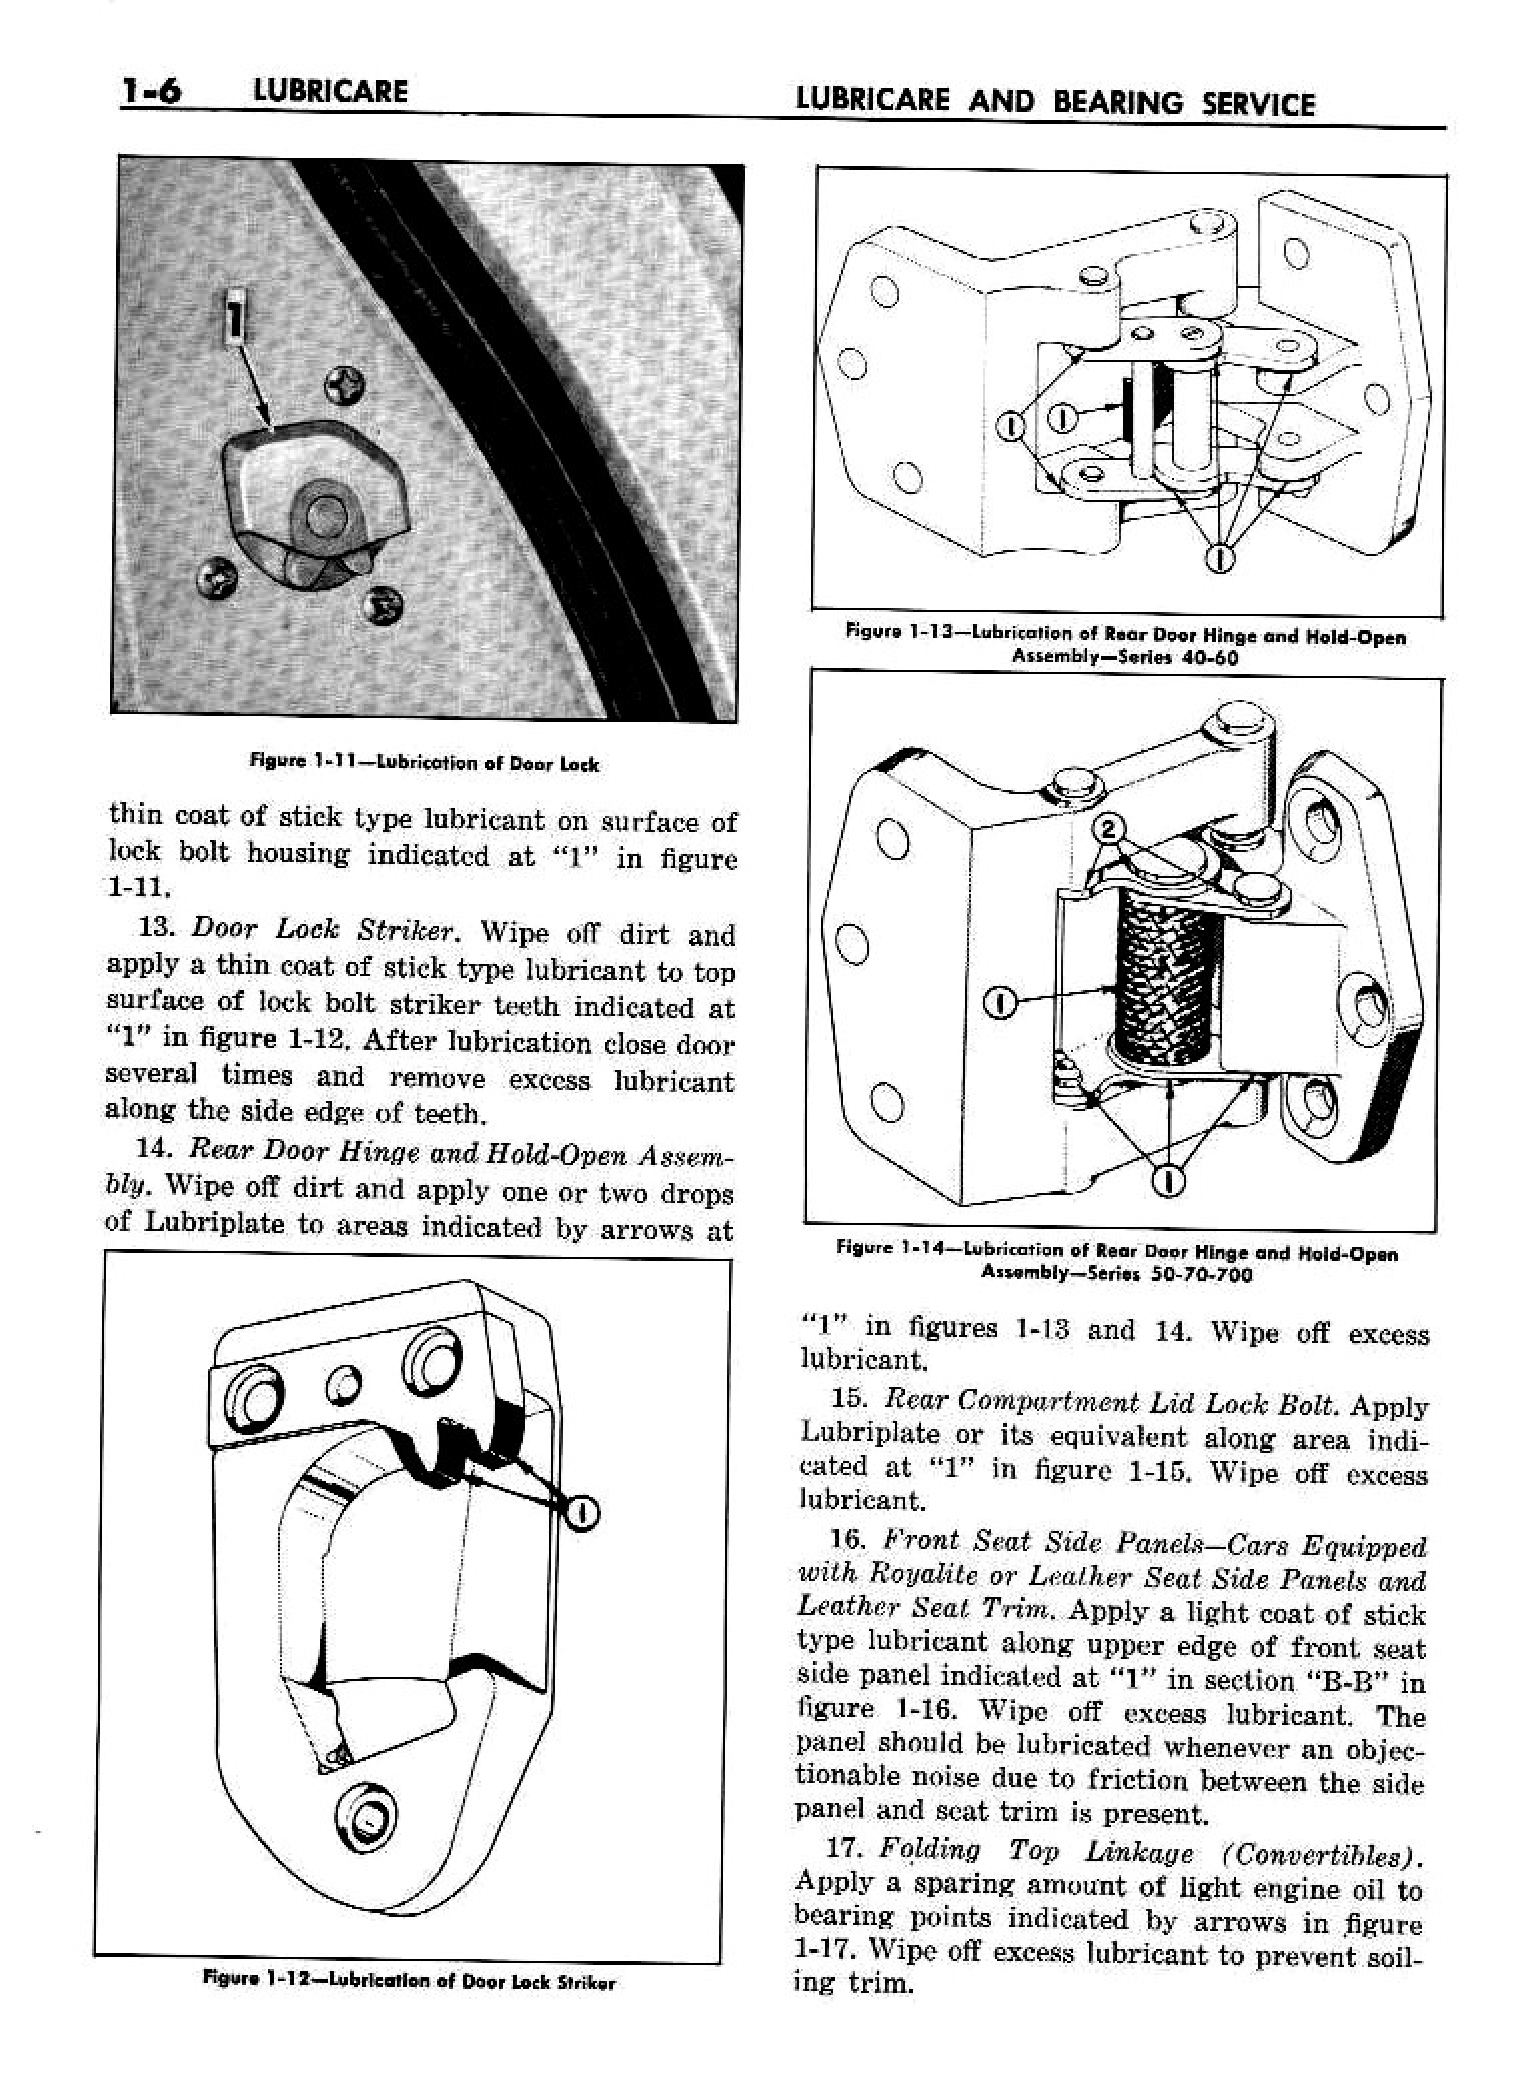 n_02 1958 Buick Shop Manual - Lubricare_6.jpg